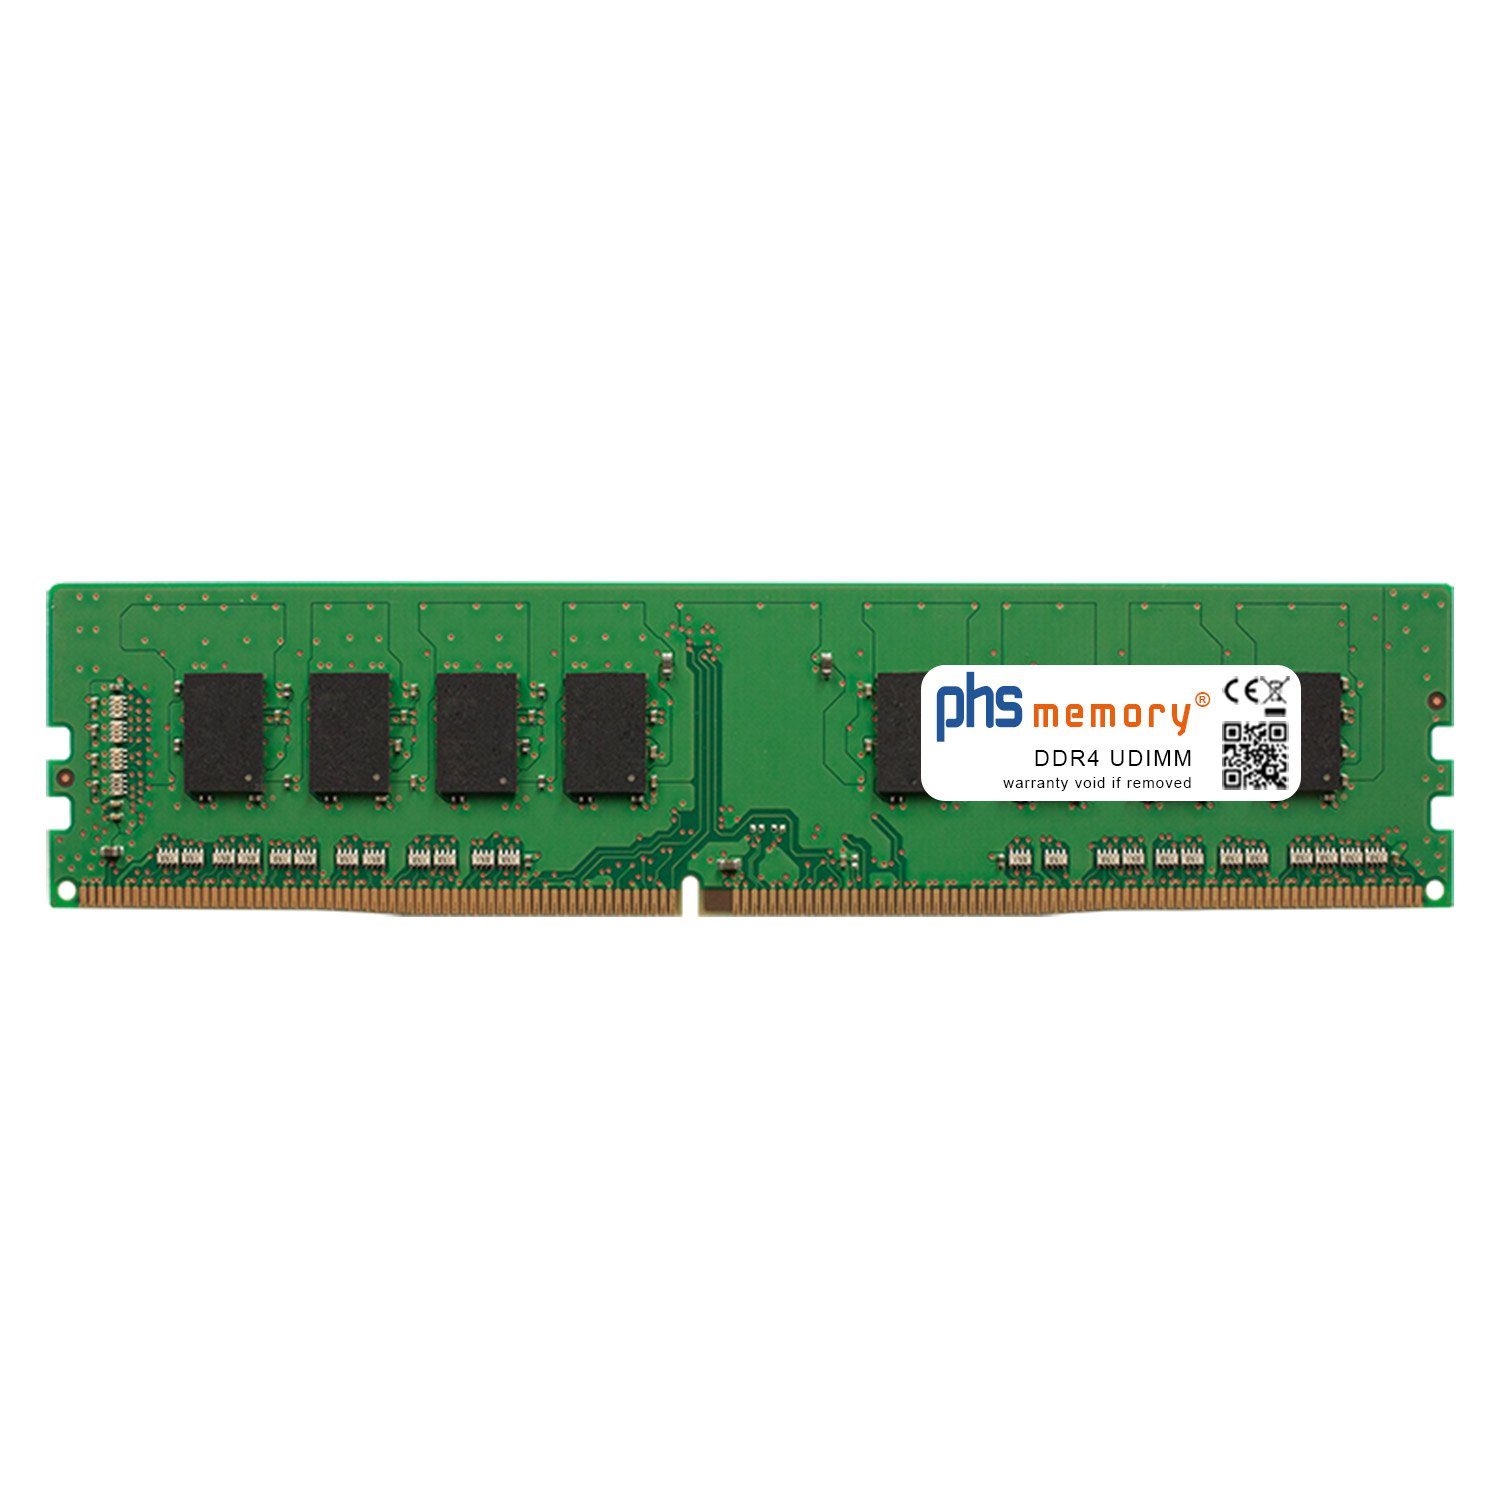 PHS-memory RAM für Captiva Power Starter R67-195 Arbeitsspeicher